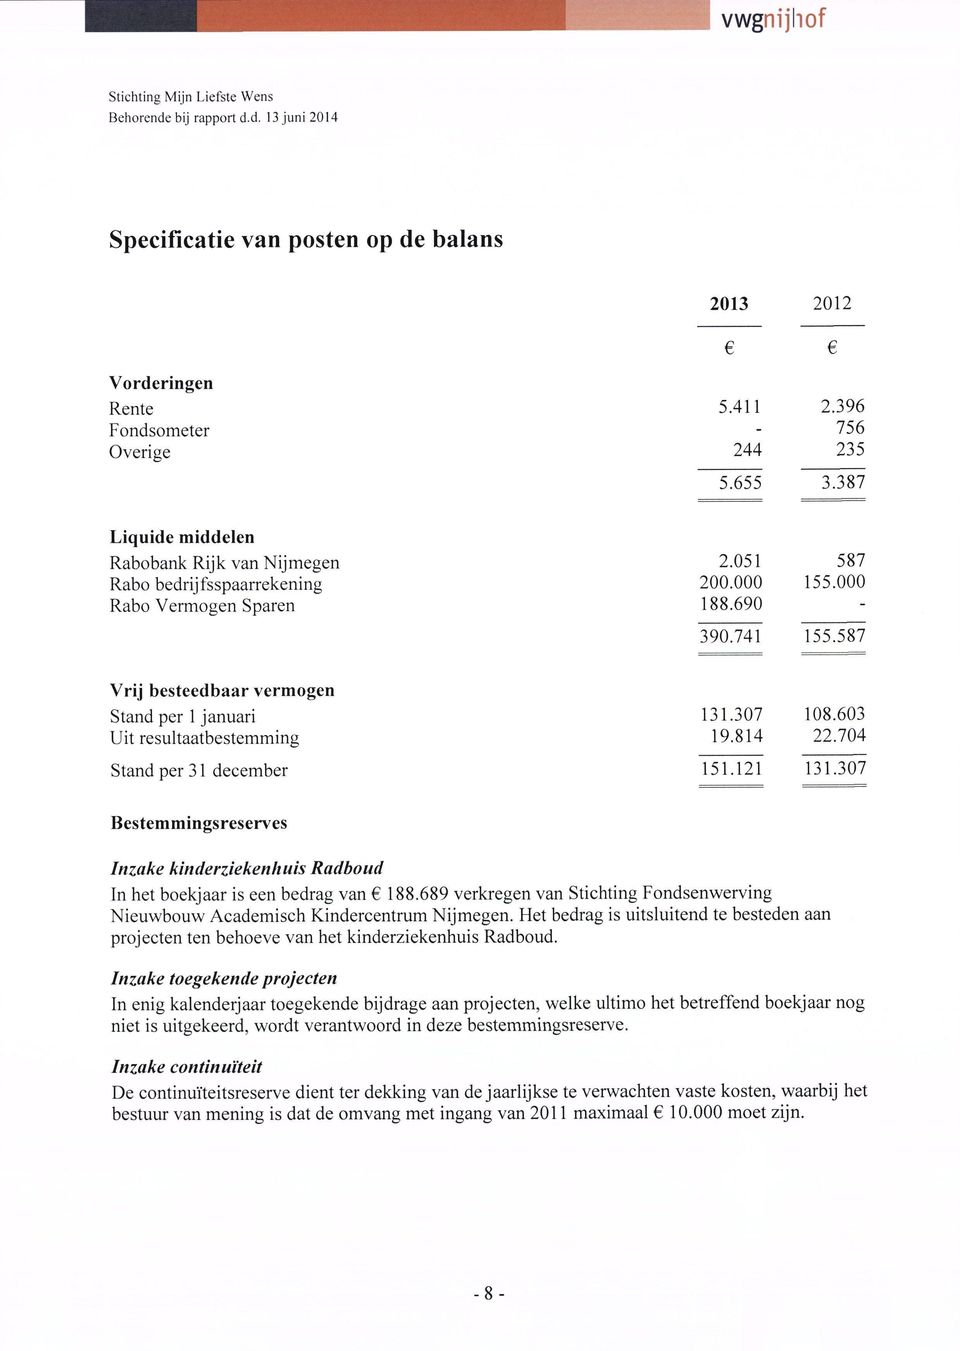 307 108.603 Uit resultaatbestemming 19.814 22.704 Stand per 31 december 151.121 131.307 Bestemmingsreserves Inzake kinderziekenhuis Radboud In het boekjaar is een bedrag van 188.